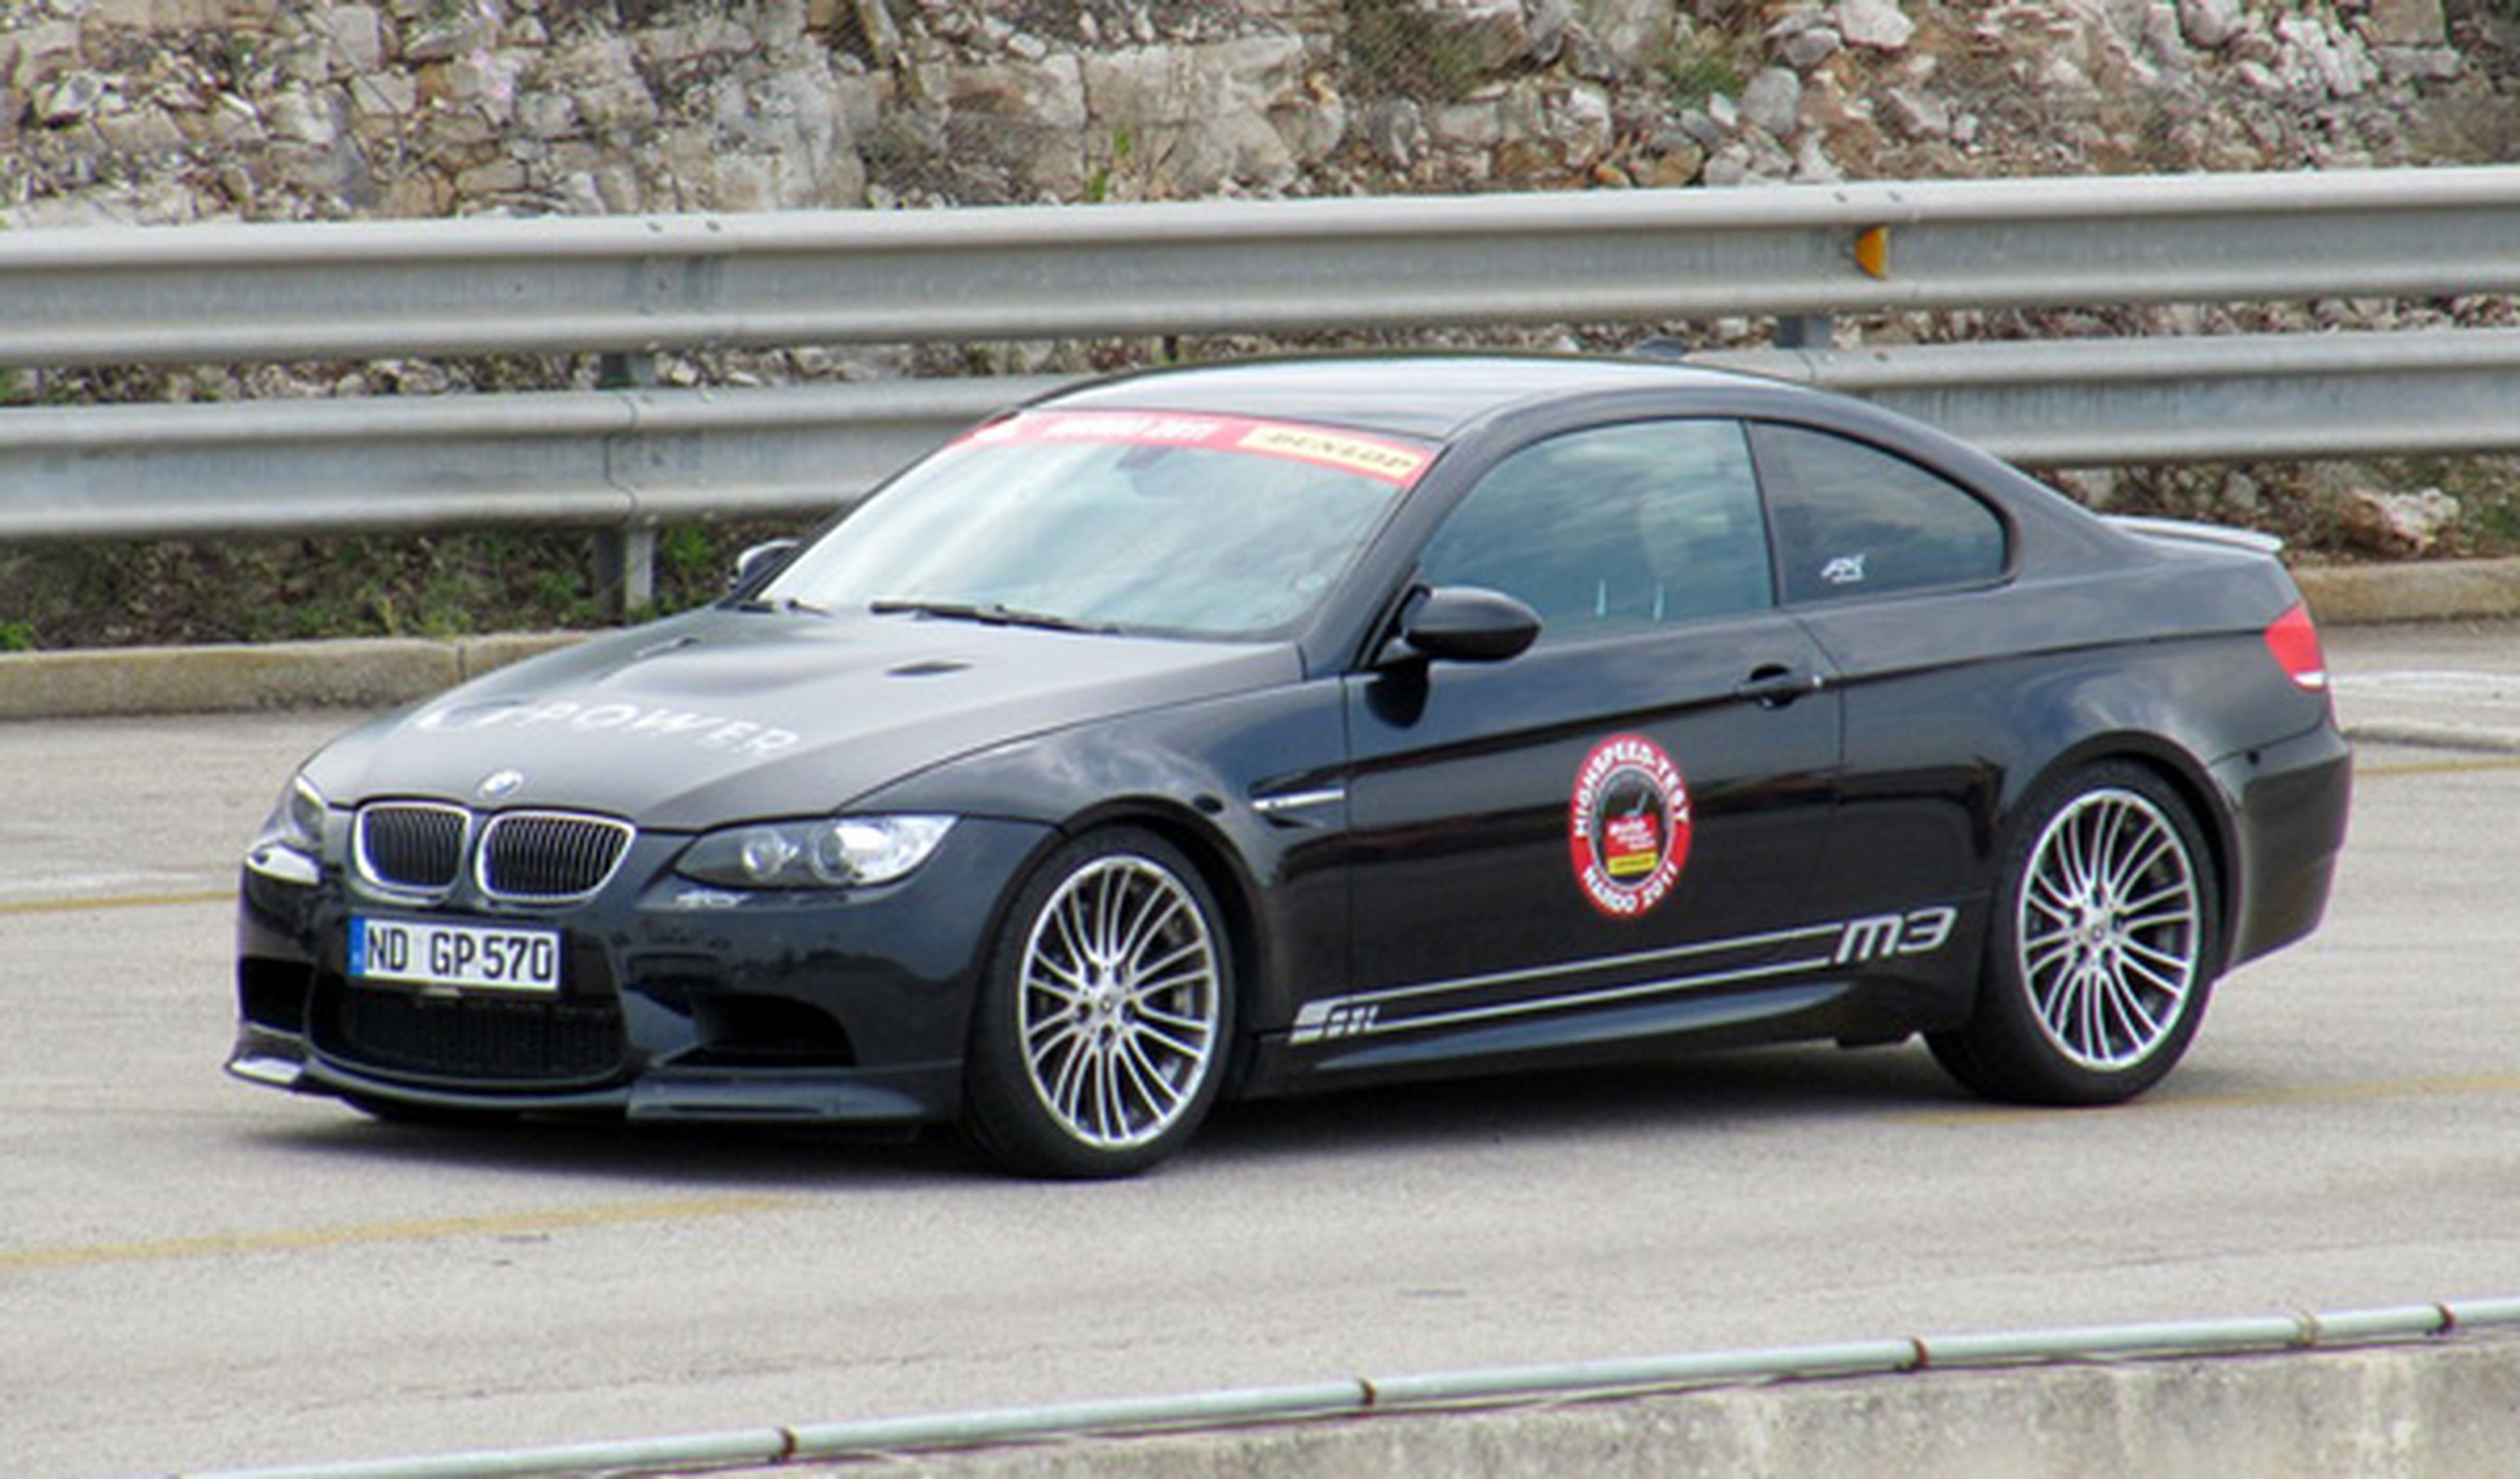 Un BMW M3 G-Power de 570 CV alcanza los 333 km/h